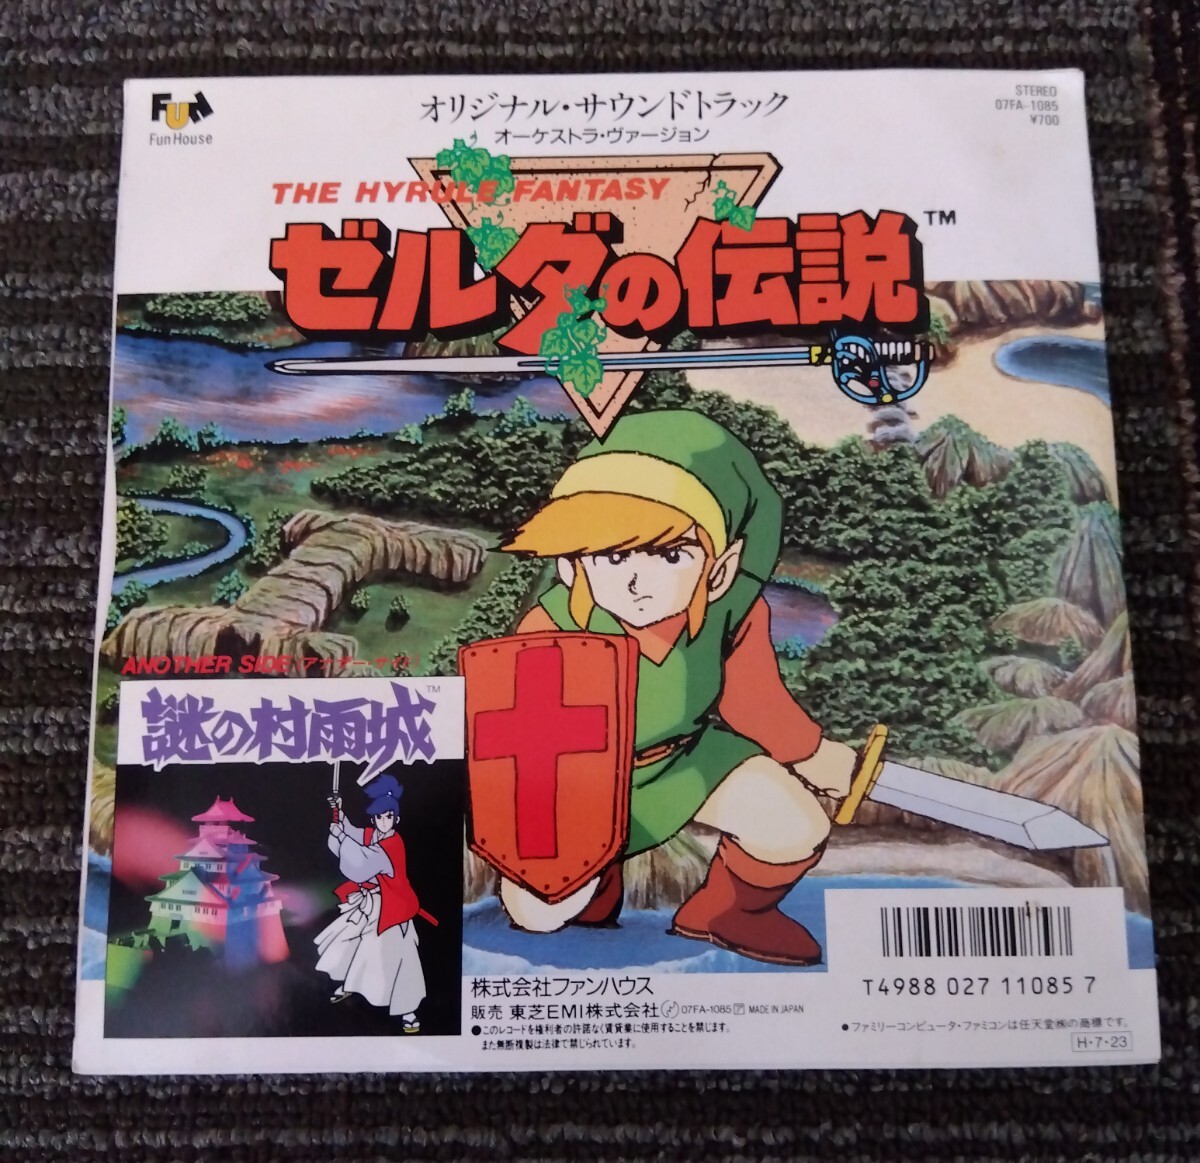 【送料無料】EP ゼルダの伝説 謎の村雨城 レコード 7INCH ゲーム 日本盤 シングル レア disk system nintendo 任天堂の画像1